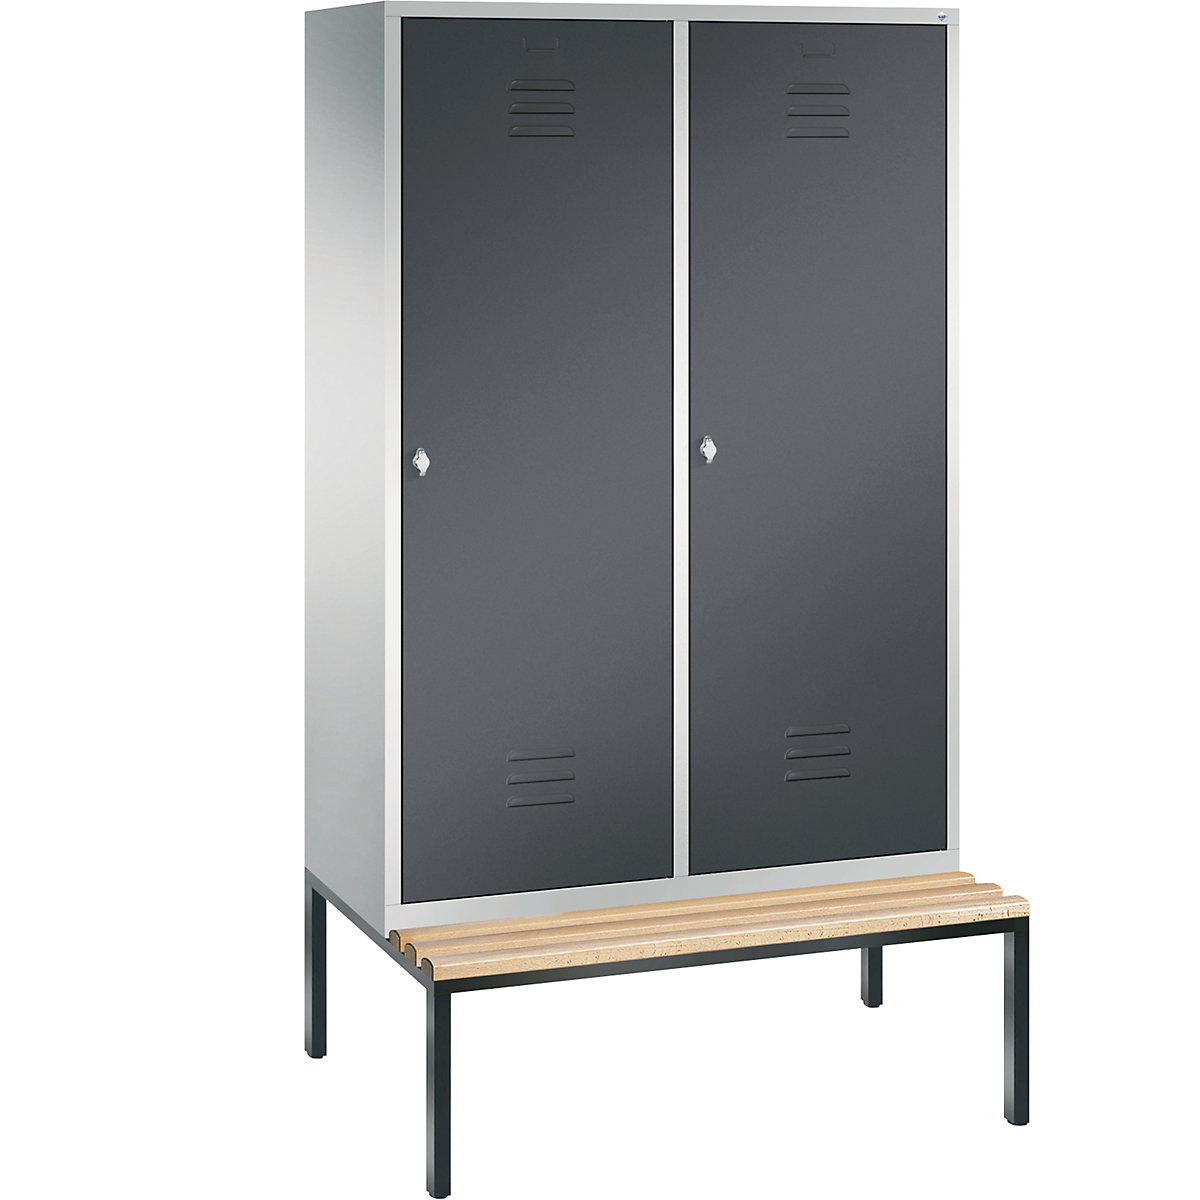 Šatní skříň s podstavnou lavicí CLASSIC s dveřmi přes 2 oddíly – C+P, 4 oddíly, šířka oddílu 300 mm, světlá šedá / černošedá-13